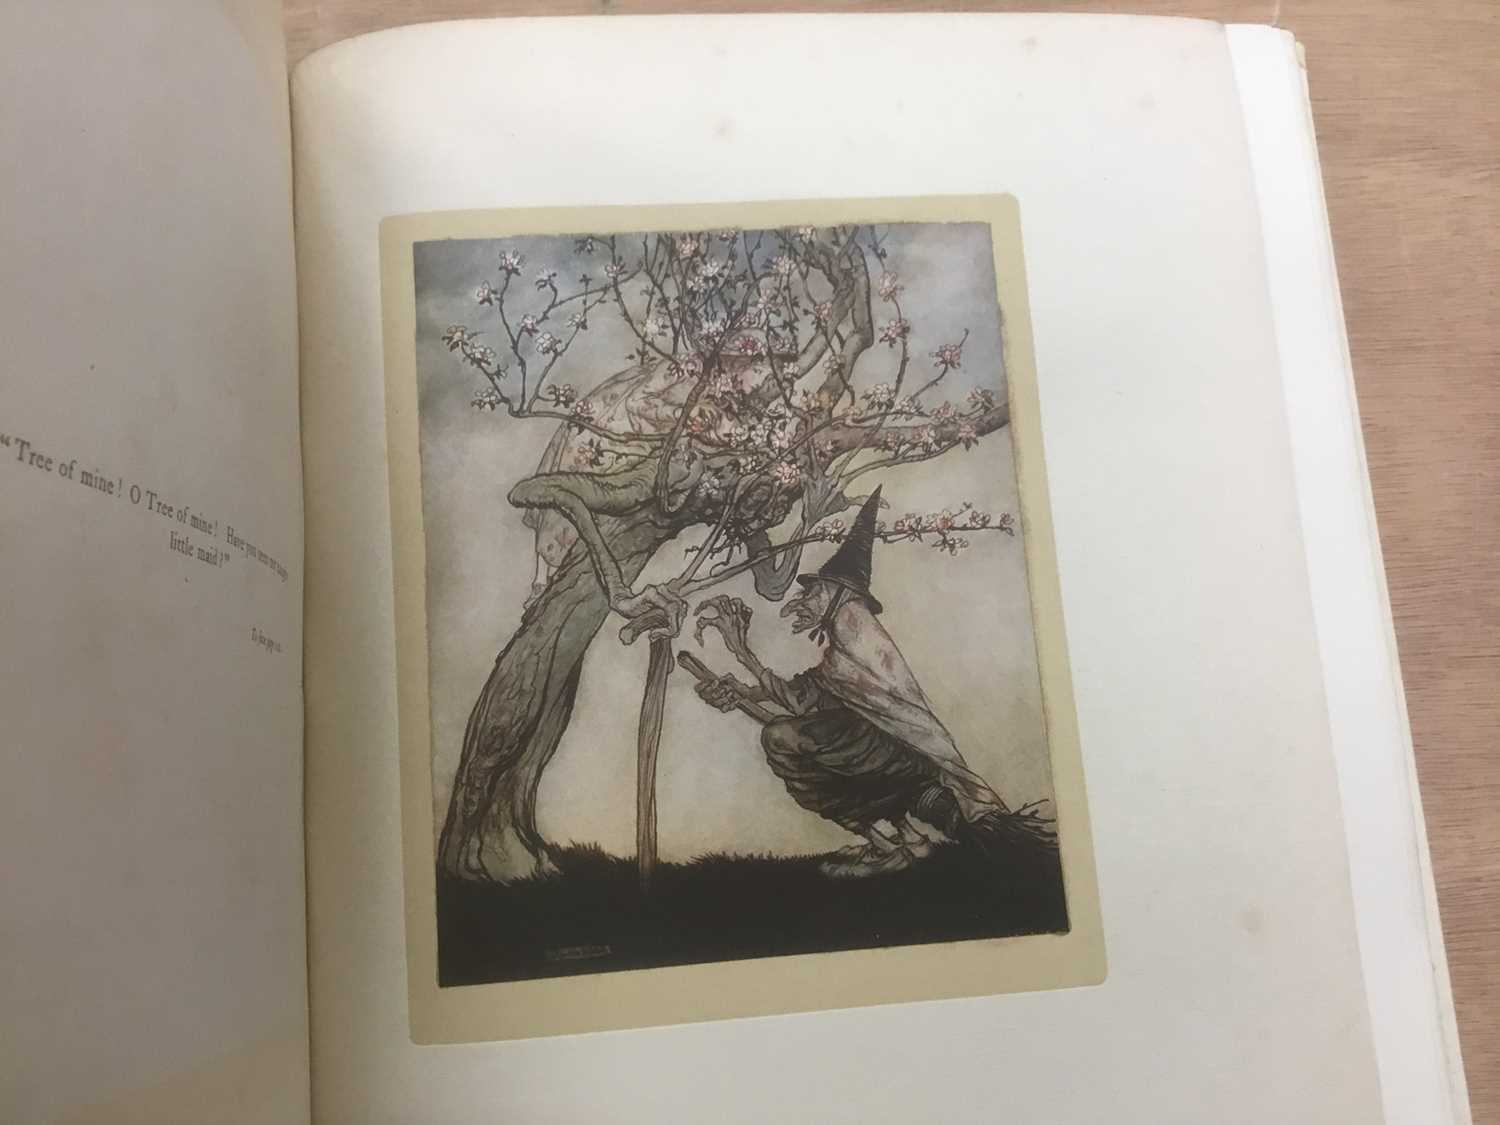 Arthur Rackham - English Fairy Tales, signed limited edition 389/500, white velum binding - Image 10 of 10